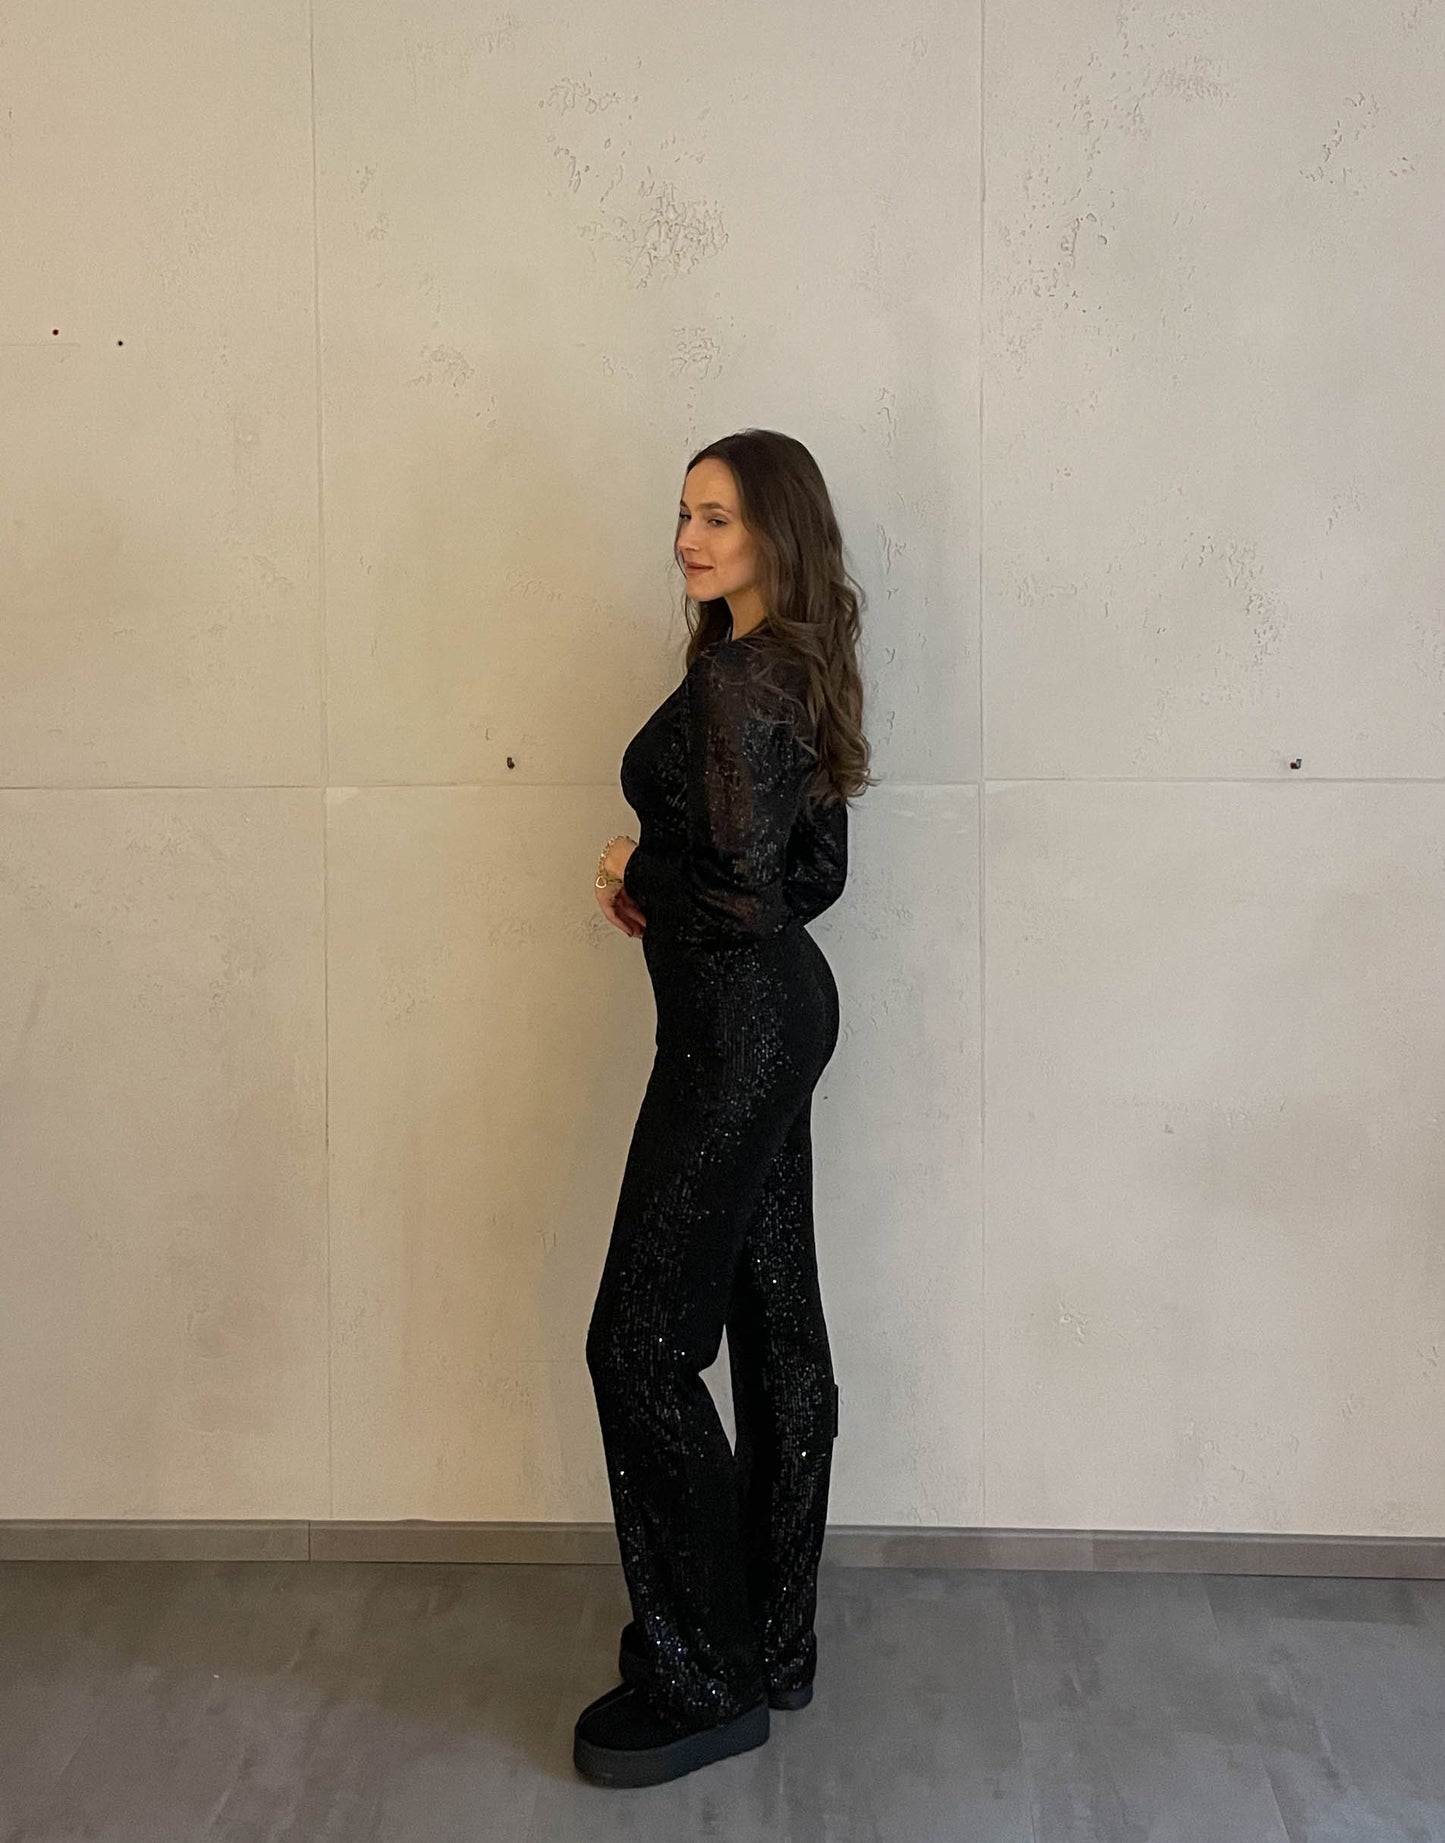 Frau mit brauen Haaren trägt Paillettenhose in schwarz